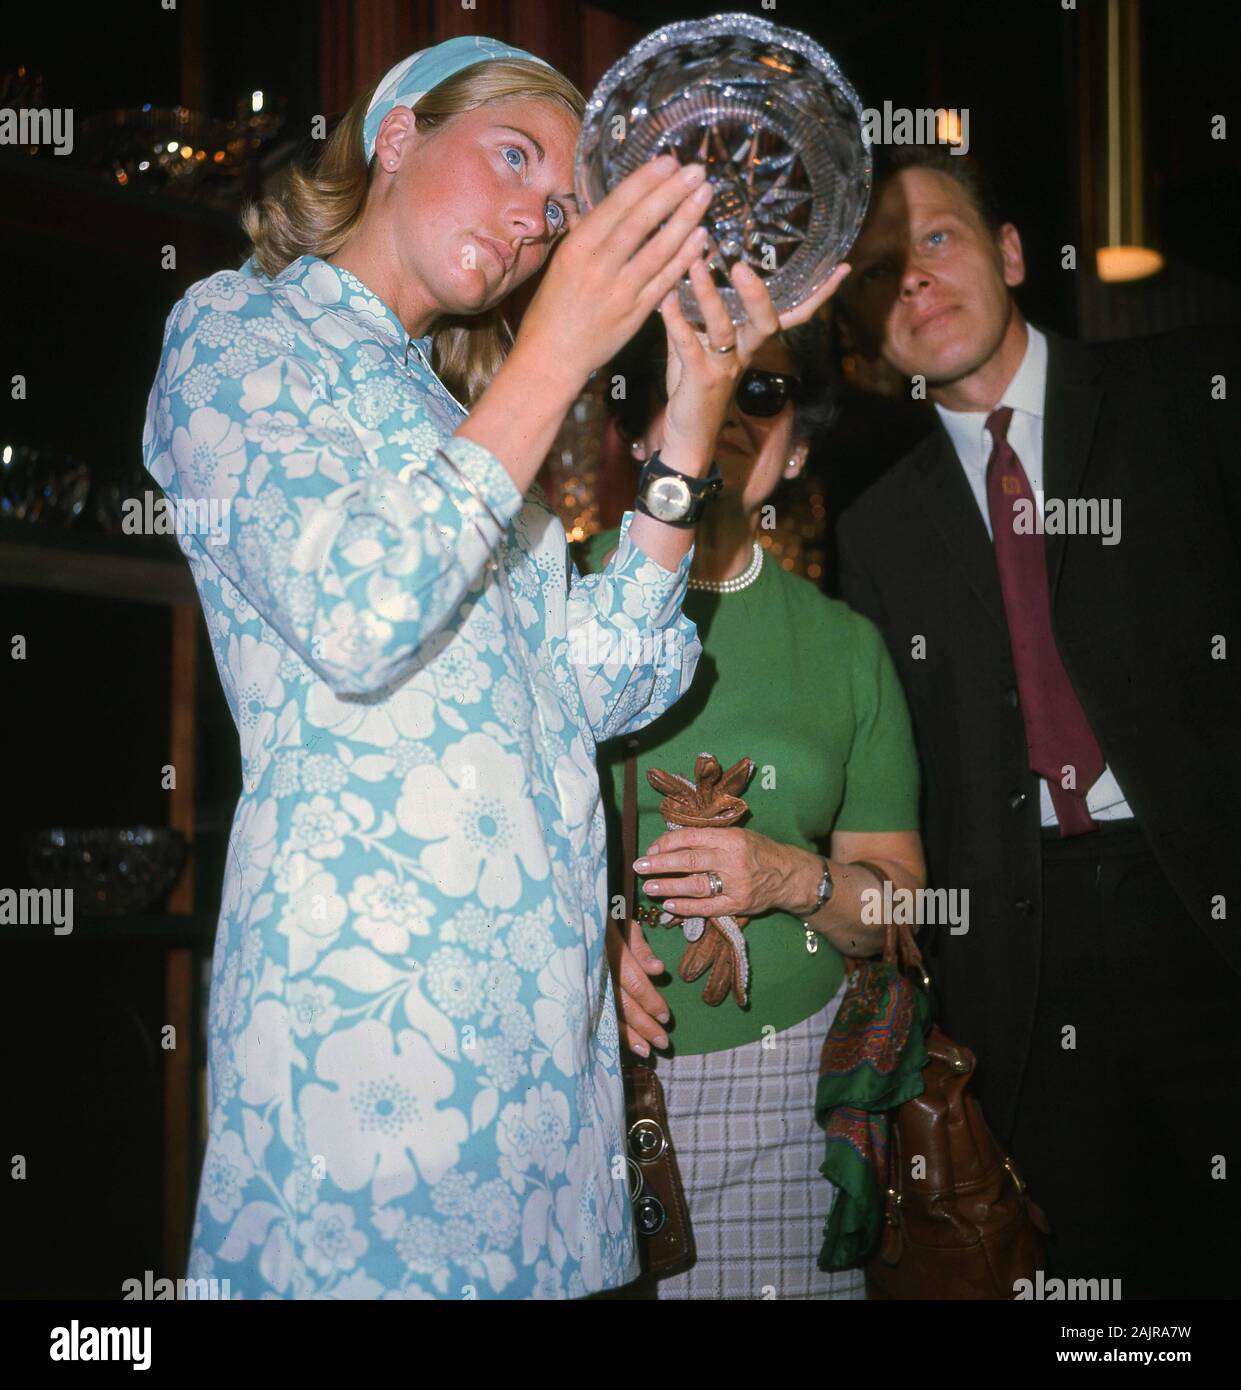 1960s, storico, una giovane signora in un abito a motivi floreali blu chiaro dell'epoca che studia una ciotola di vetro tagliata di recente produzione, Inghilterra, Regno Unito. Foto Stock